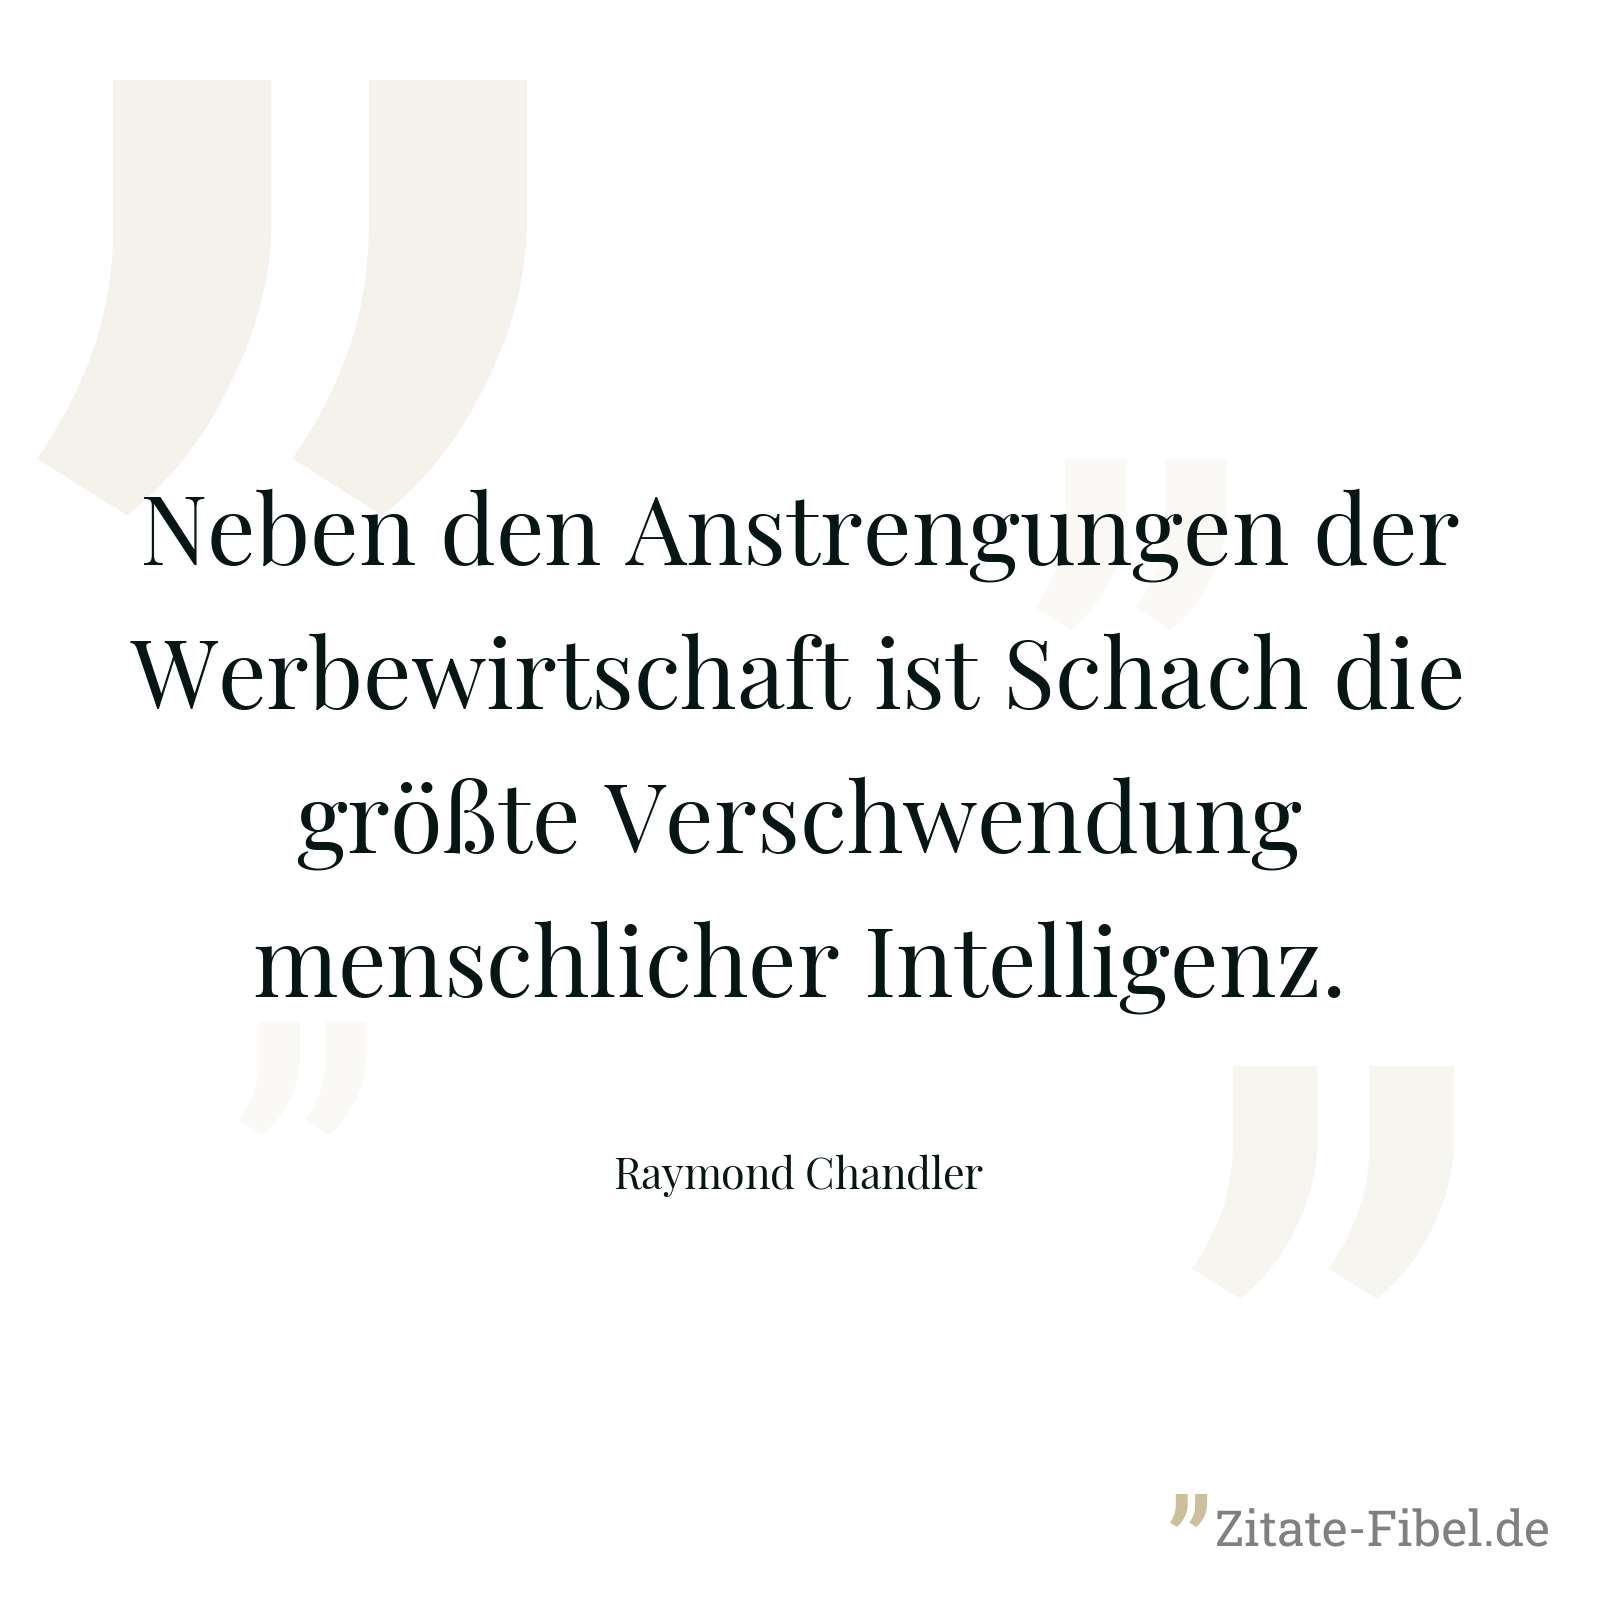 Neben den Anstrengungen der Werbewirtschaft ist Schach die größte Verschwendung menschlicher Intelligenz. - Raymond Chandler